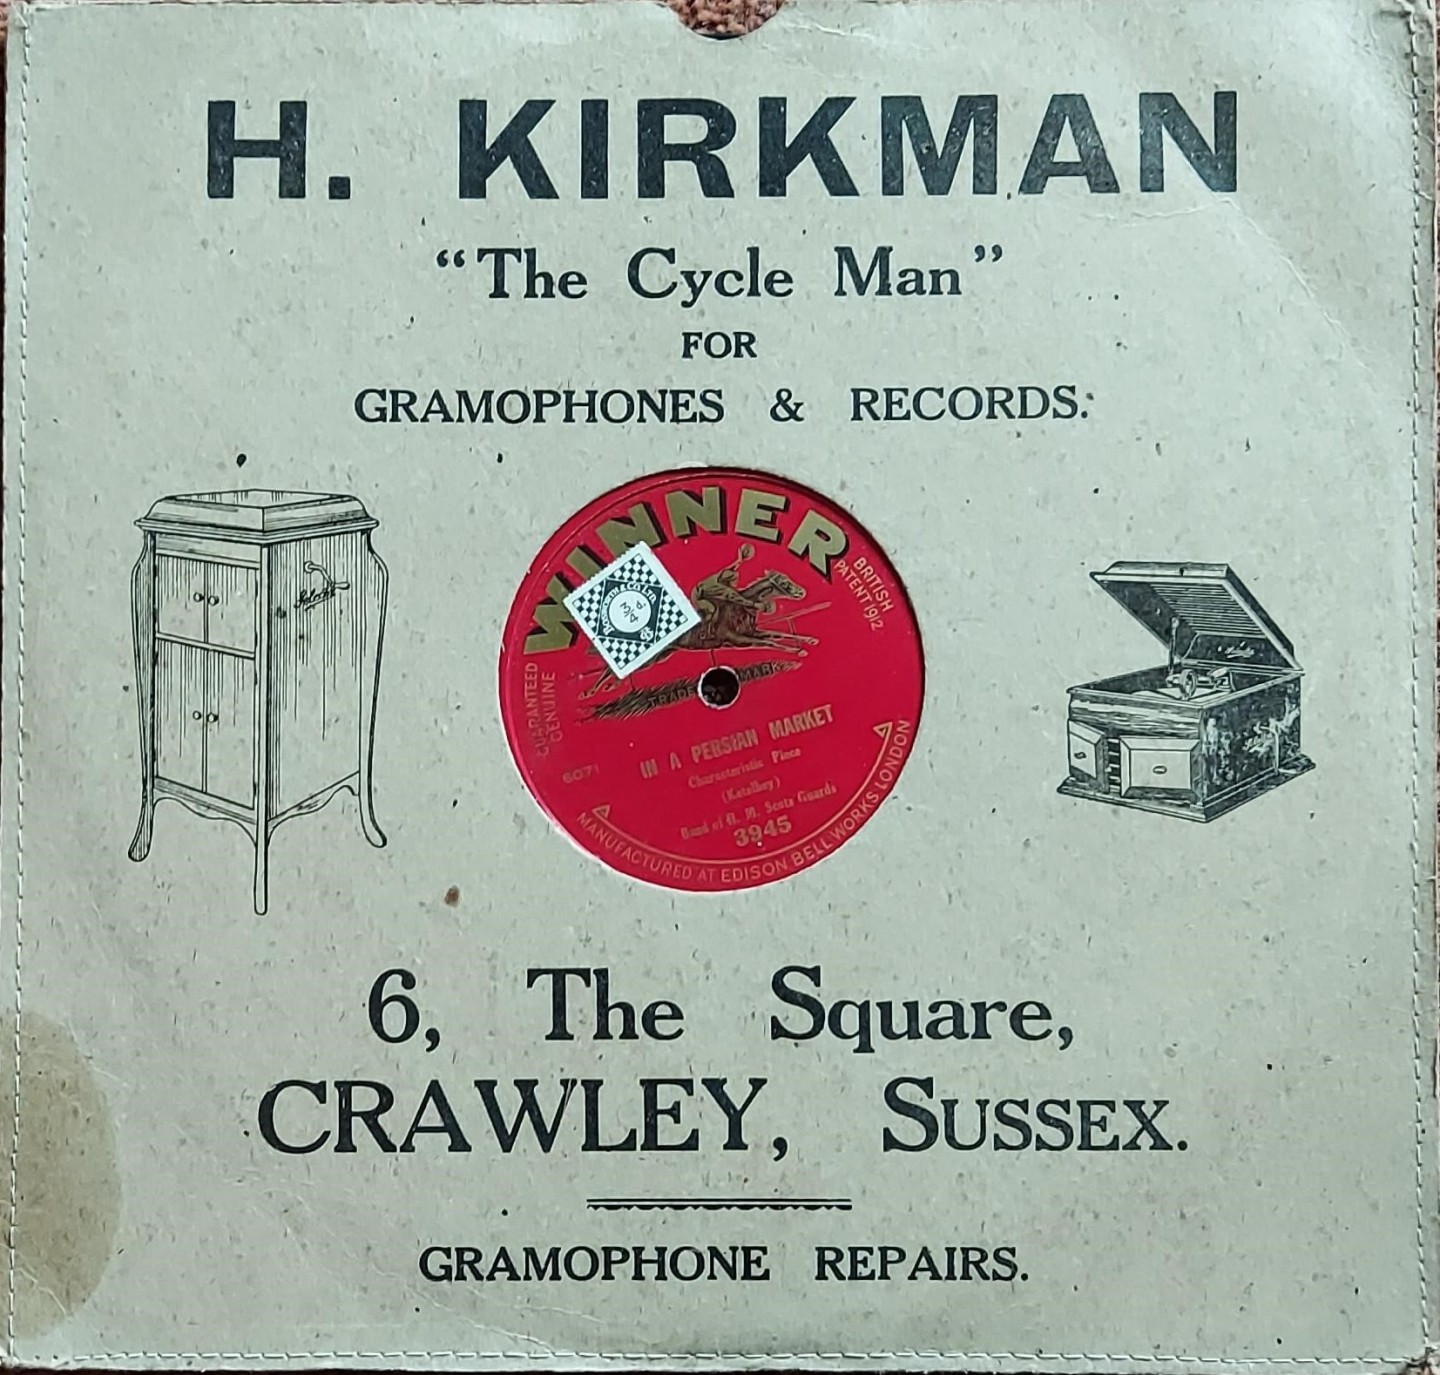 Crawley record